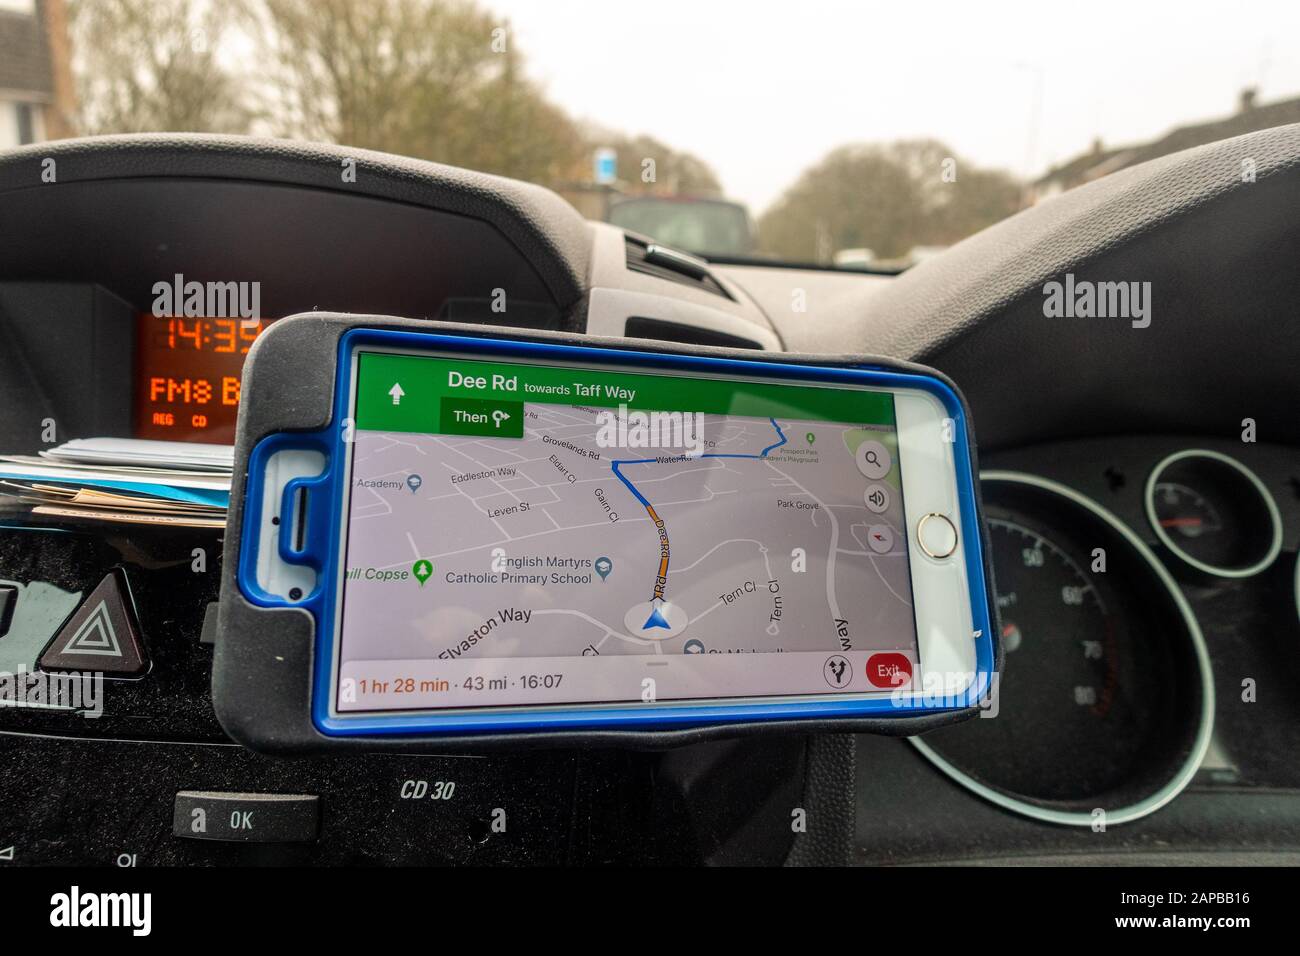 Google Maps App, die auf einem iPhone Smartphone als  Satellitennavigationssystem verwendet wird, um eine Route in einem Auto zu  planen Stockfotografie - Alamy